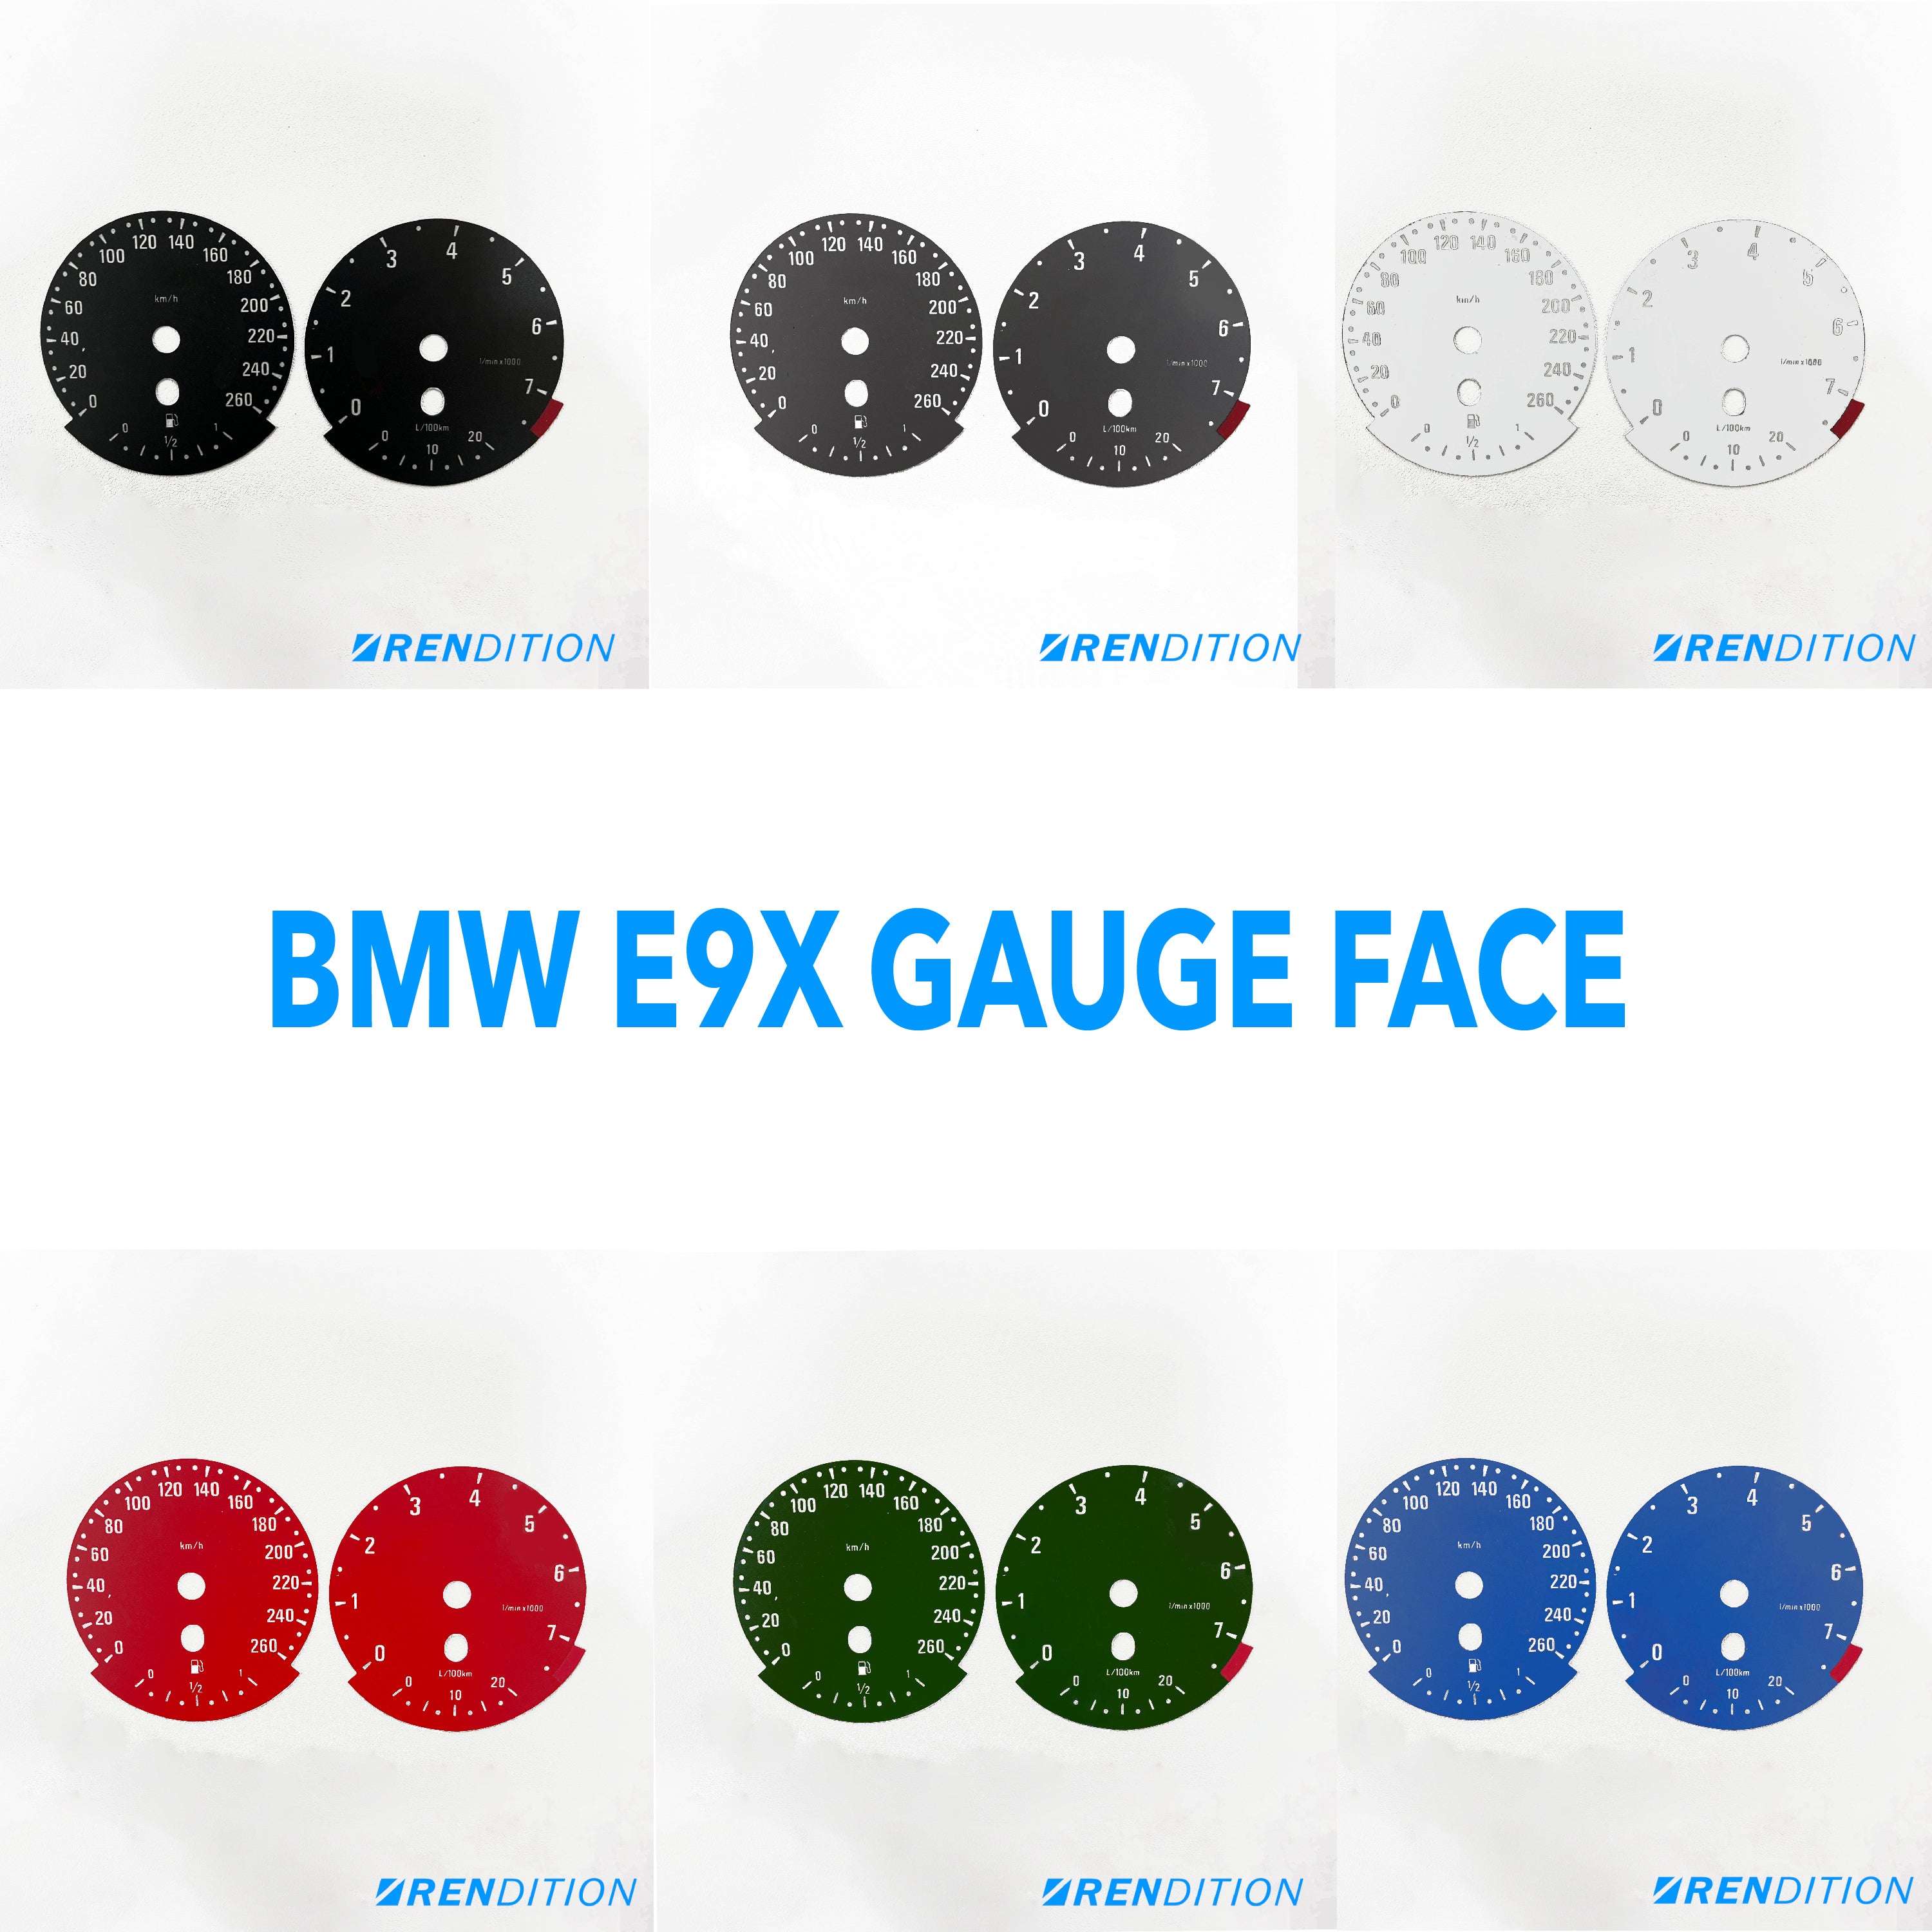 BMW E9X GAUGE FACE / GAUGE OVERLAY FOR 318, 320, 323, 325,328, 330, 335, M3